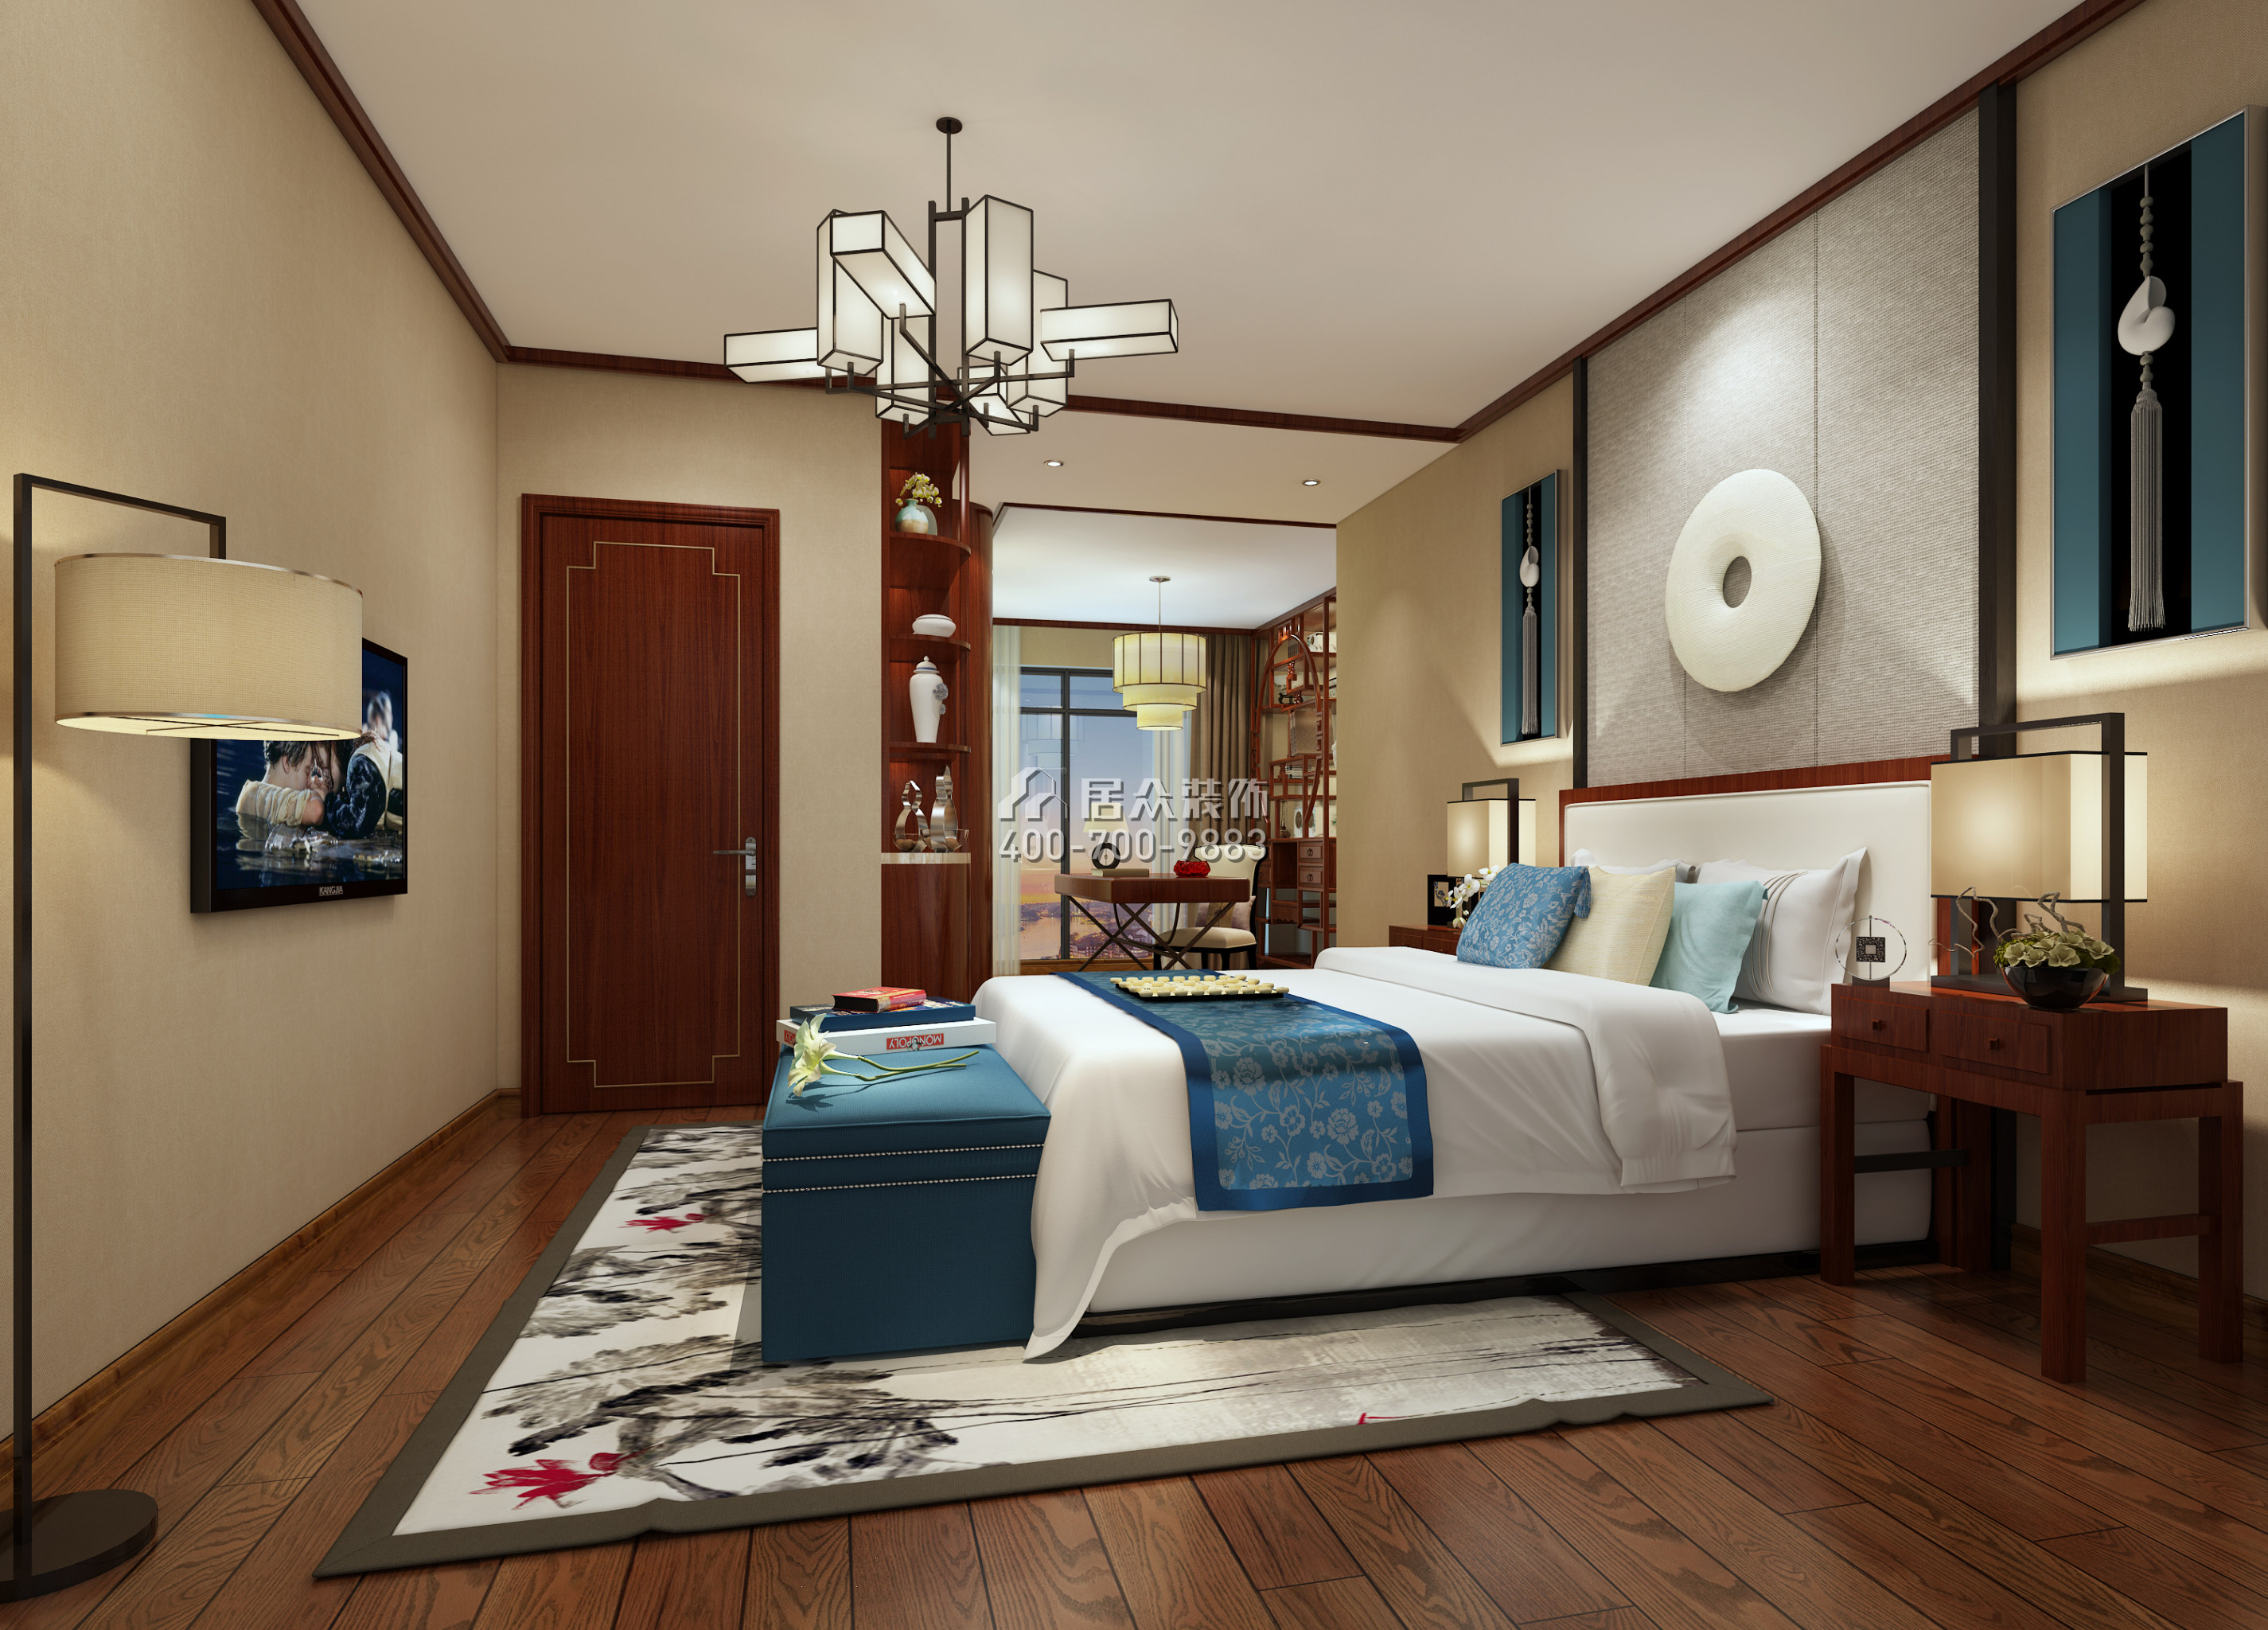 港湾丽都360平方米中式风格复式户型卧室装修效果图